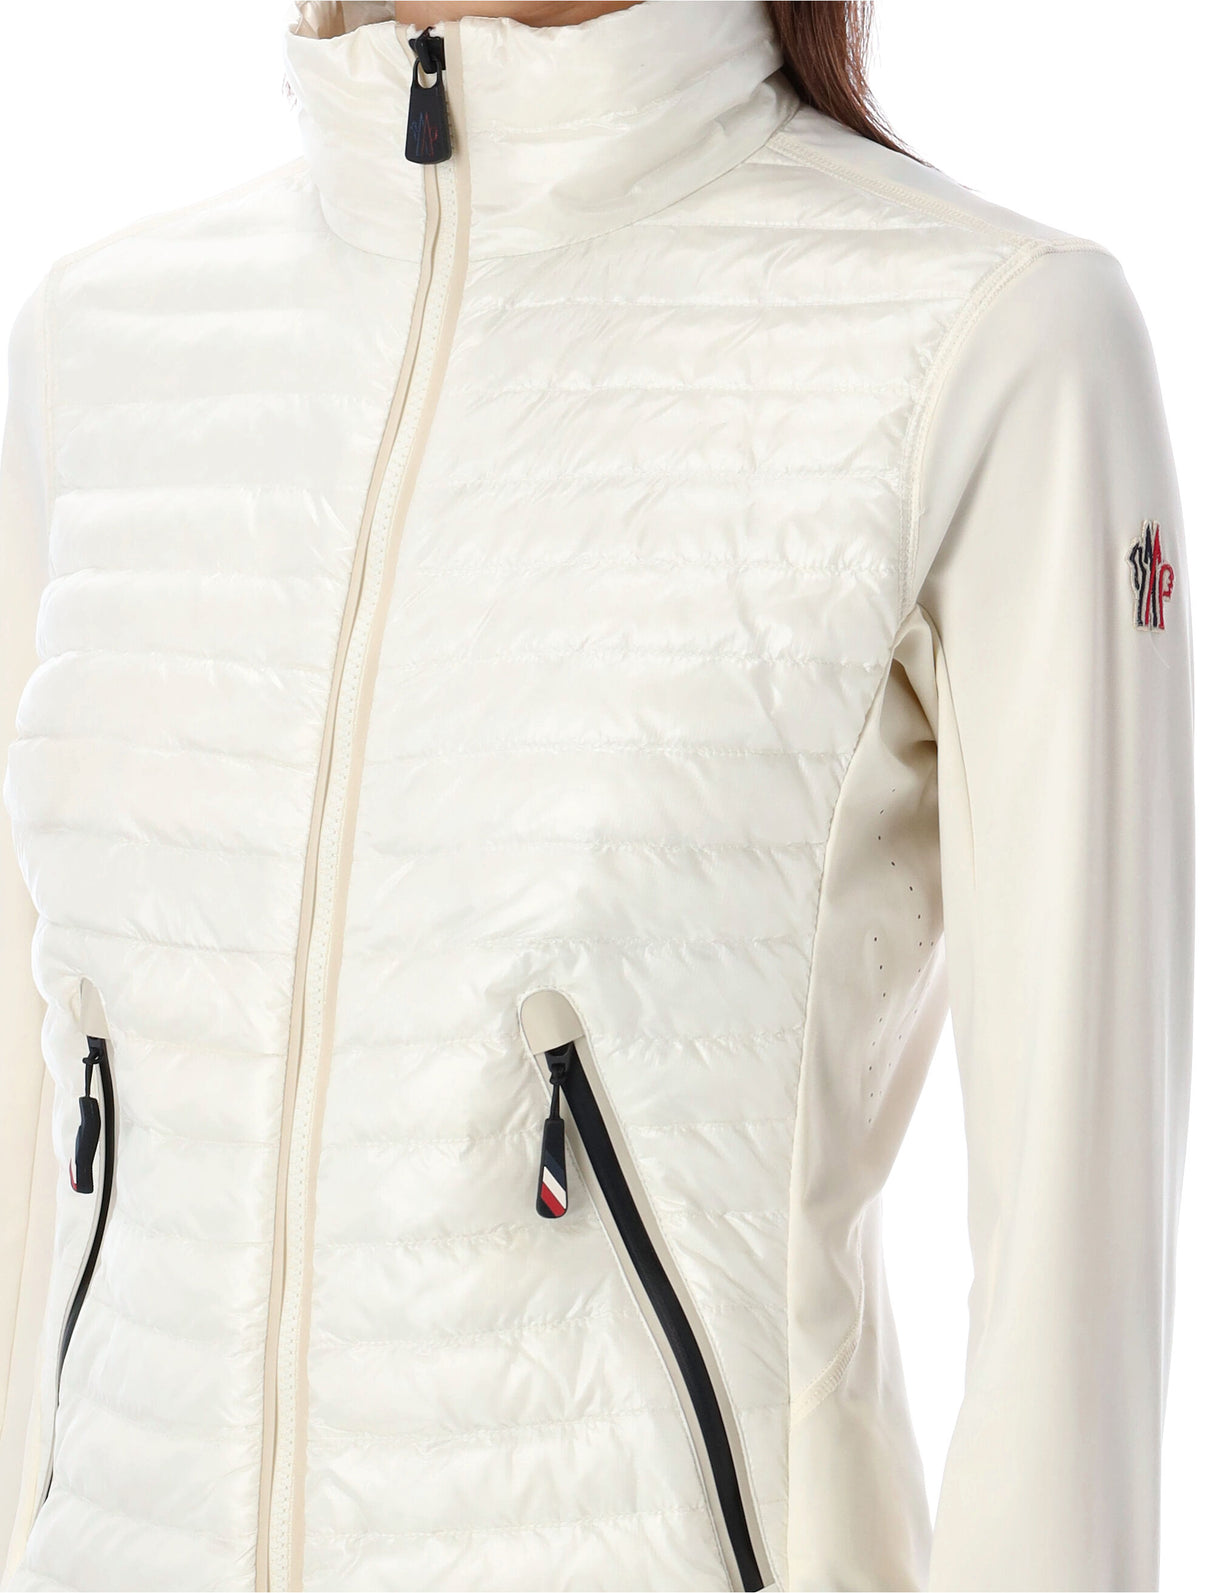 MONCLER GRENOBLE White Zip Up Cardigan for Women - Padded, Nylon Sleeves, Logo Detail